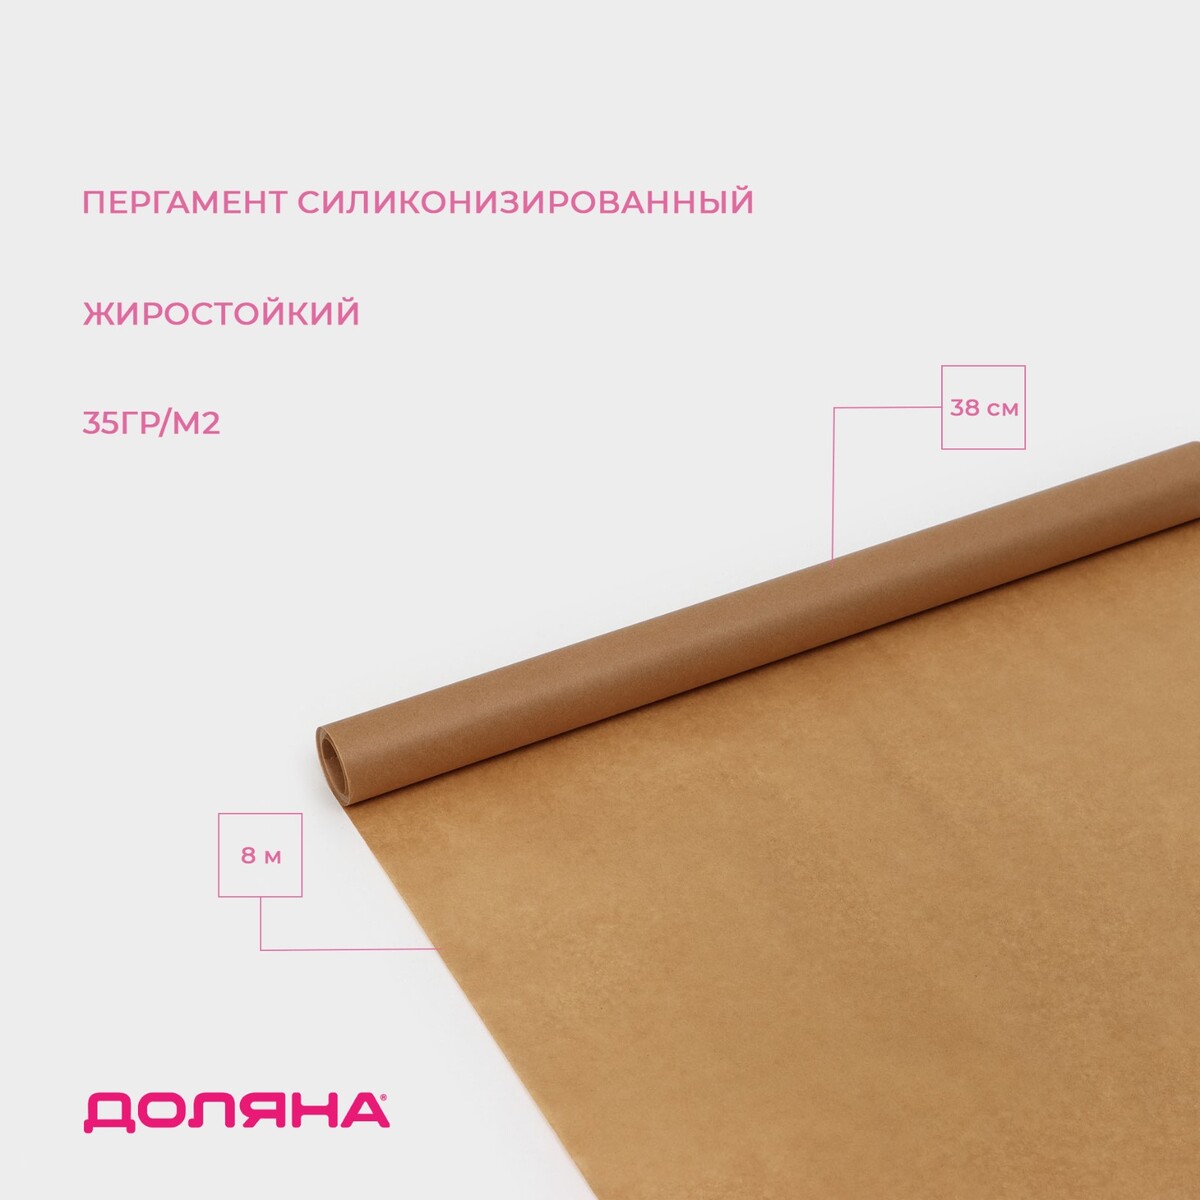 Пергамент силиконизированный доляна, 38 см х 8 м, коричневый, жиростойкий пергамент силиконизированный доляна 28 см×10 м белый жиростойкий